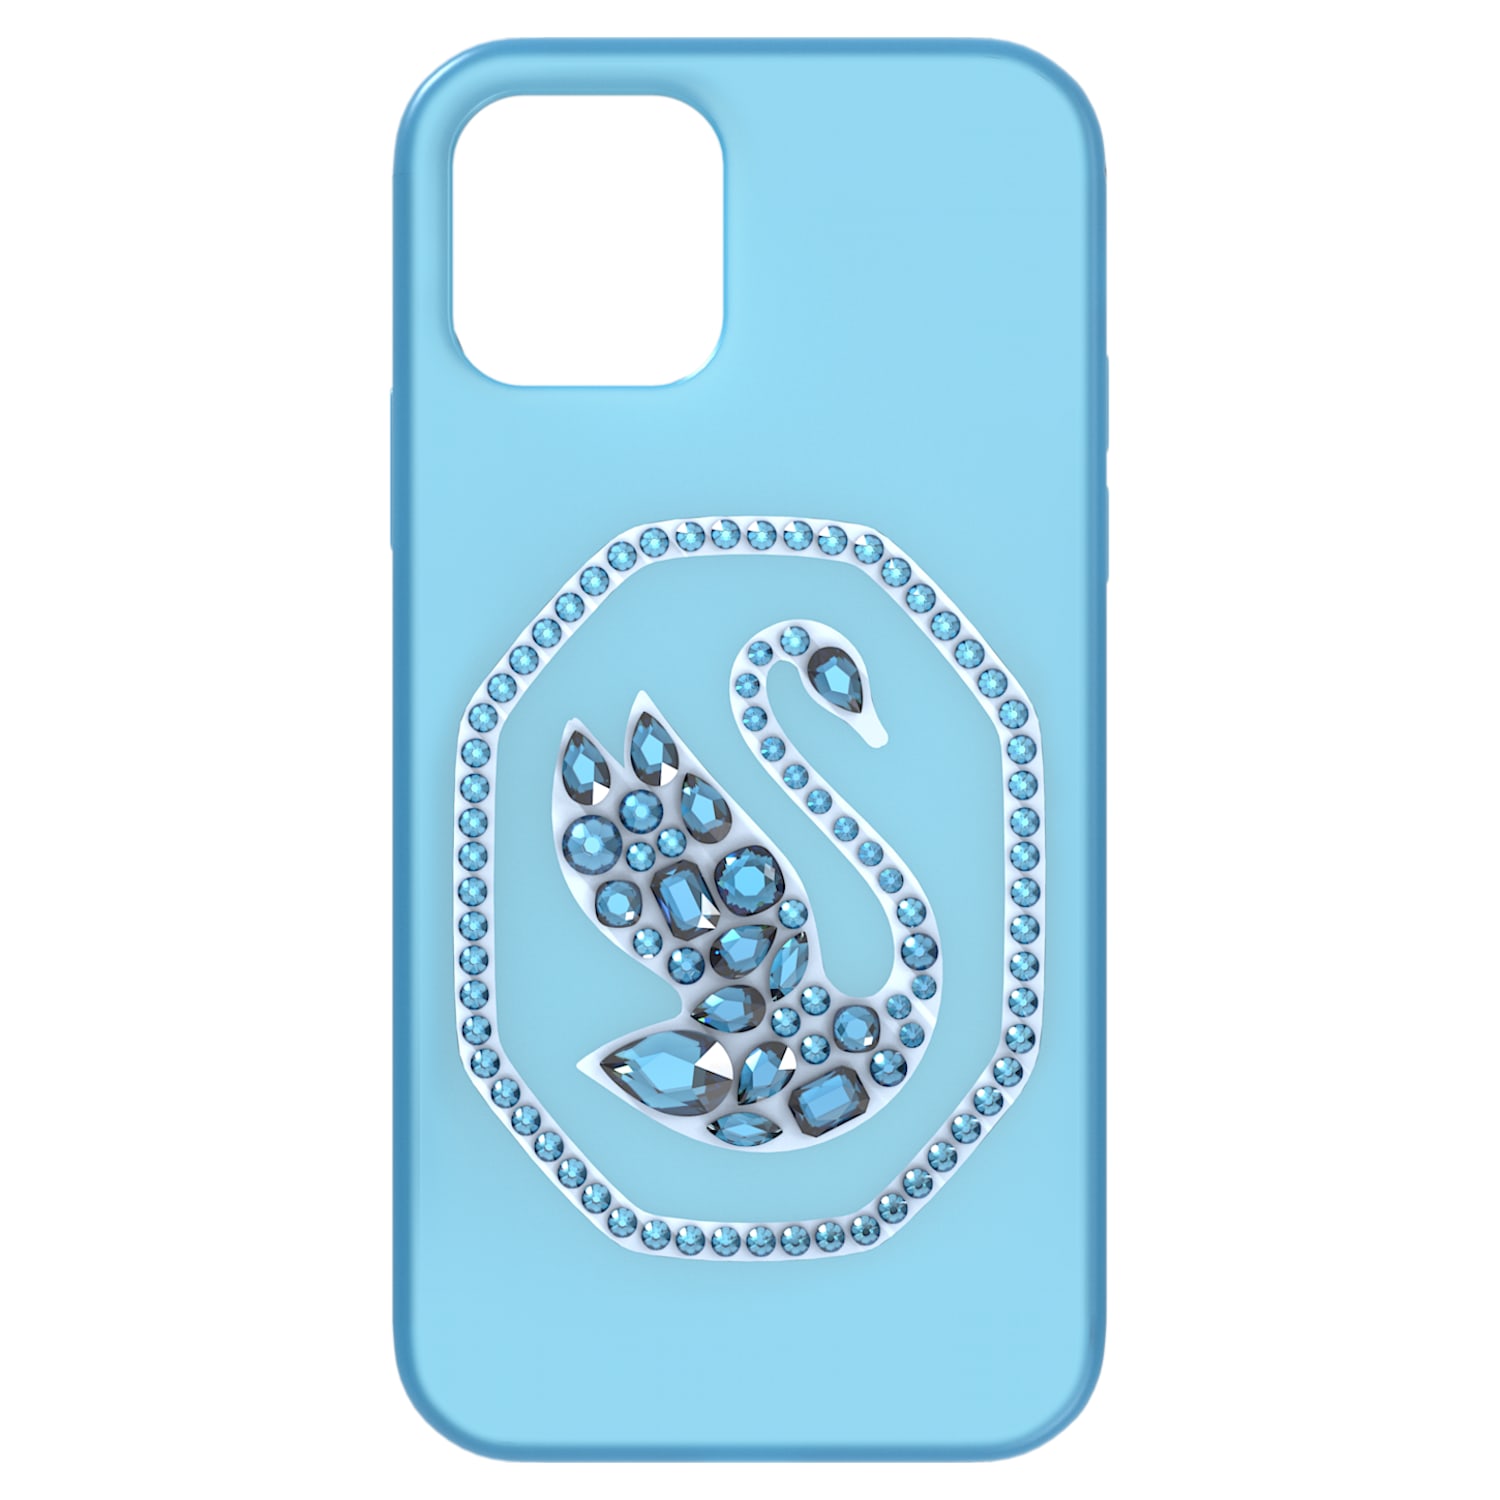 Lief Voorkeur gallon Smartphonehoesje, Swan, iPhone® 12/12 Pro, Blauw | Swarovski